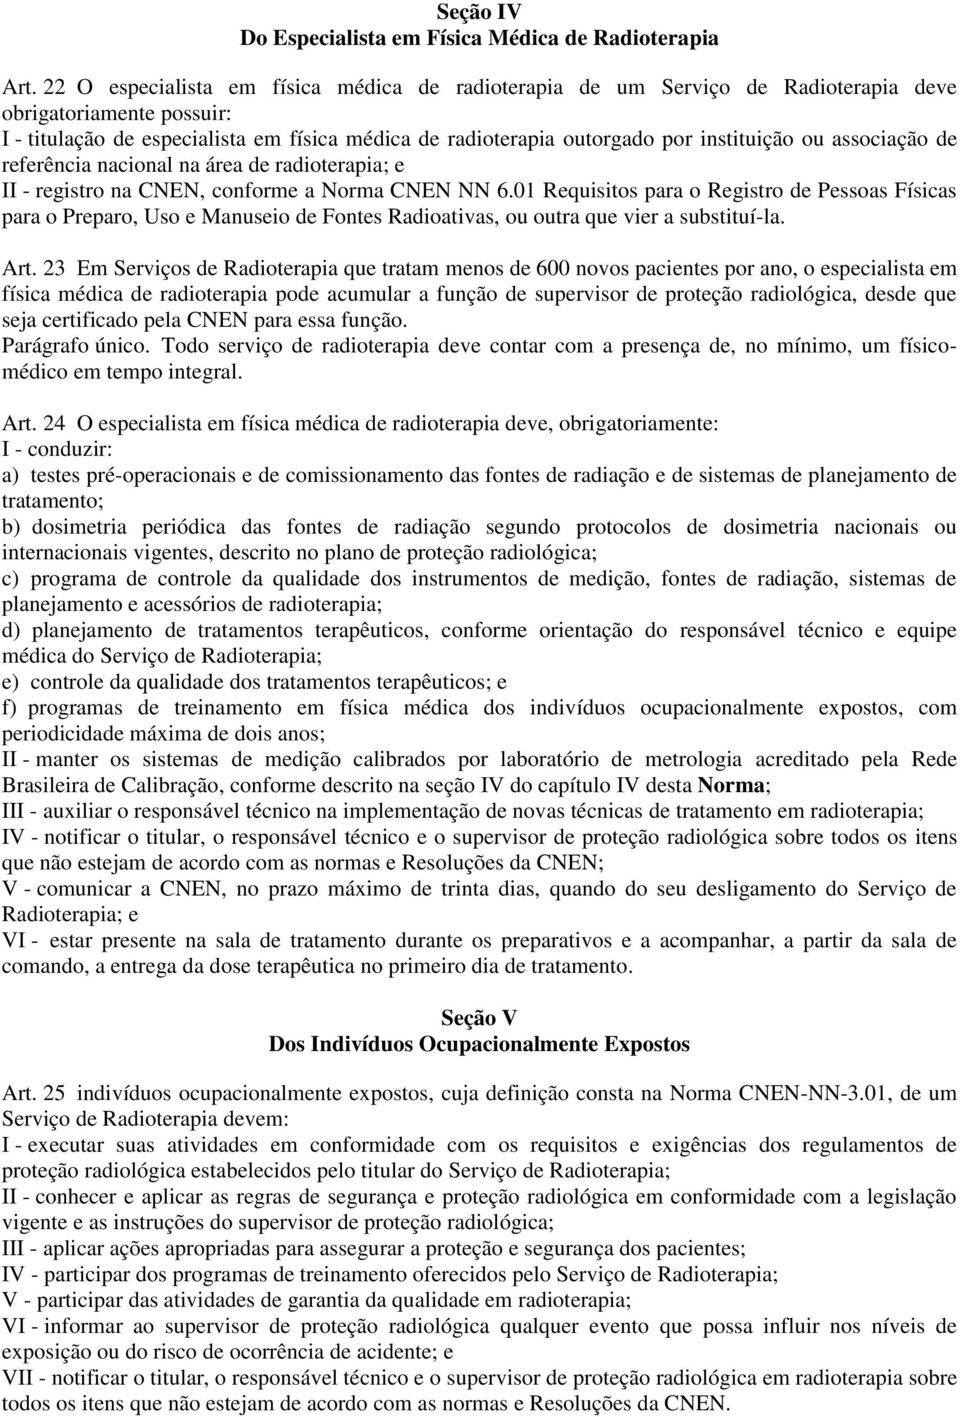 instituição ou associação de referência nacional na área de radioterapia; e II - registro na CNEN, conforme a Norma CNEN NN 6.